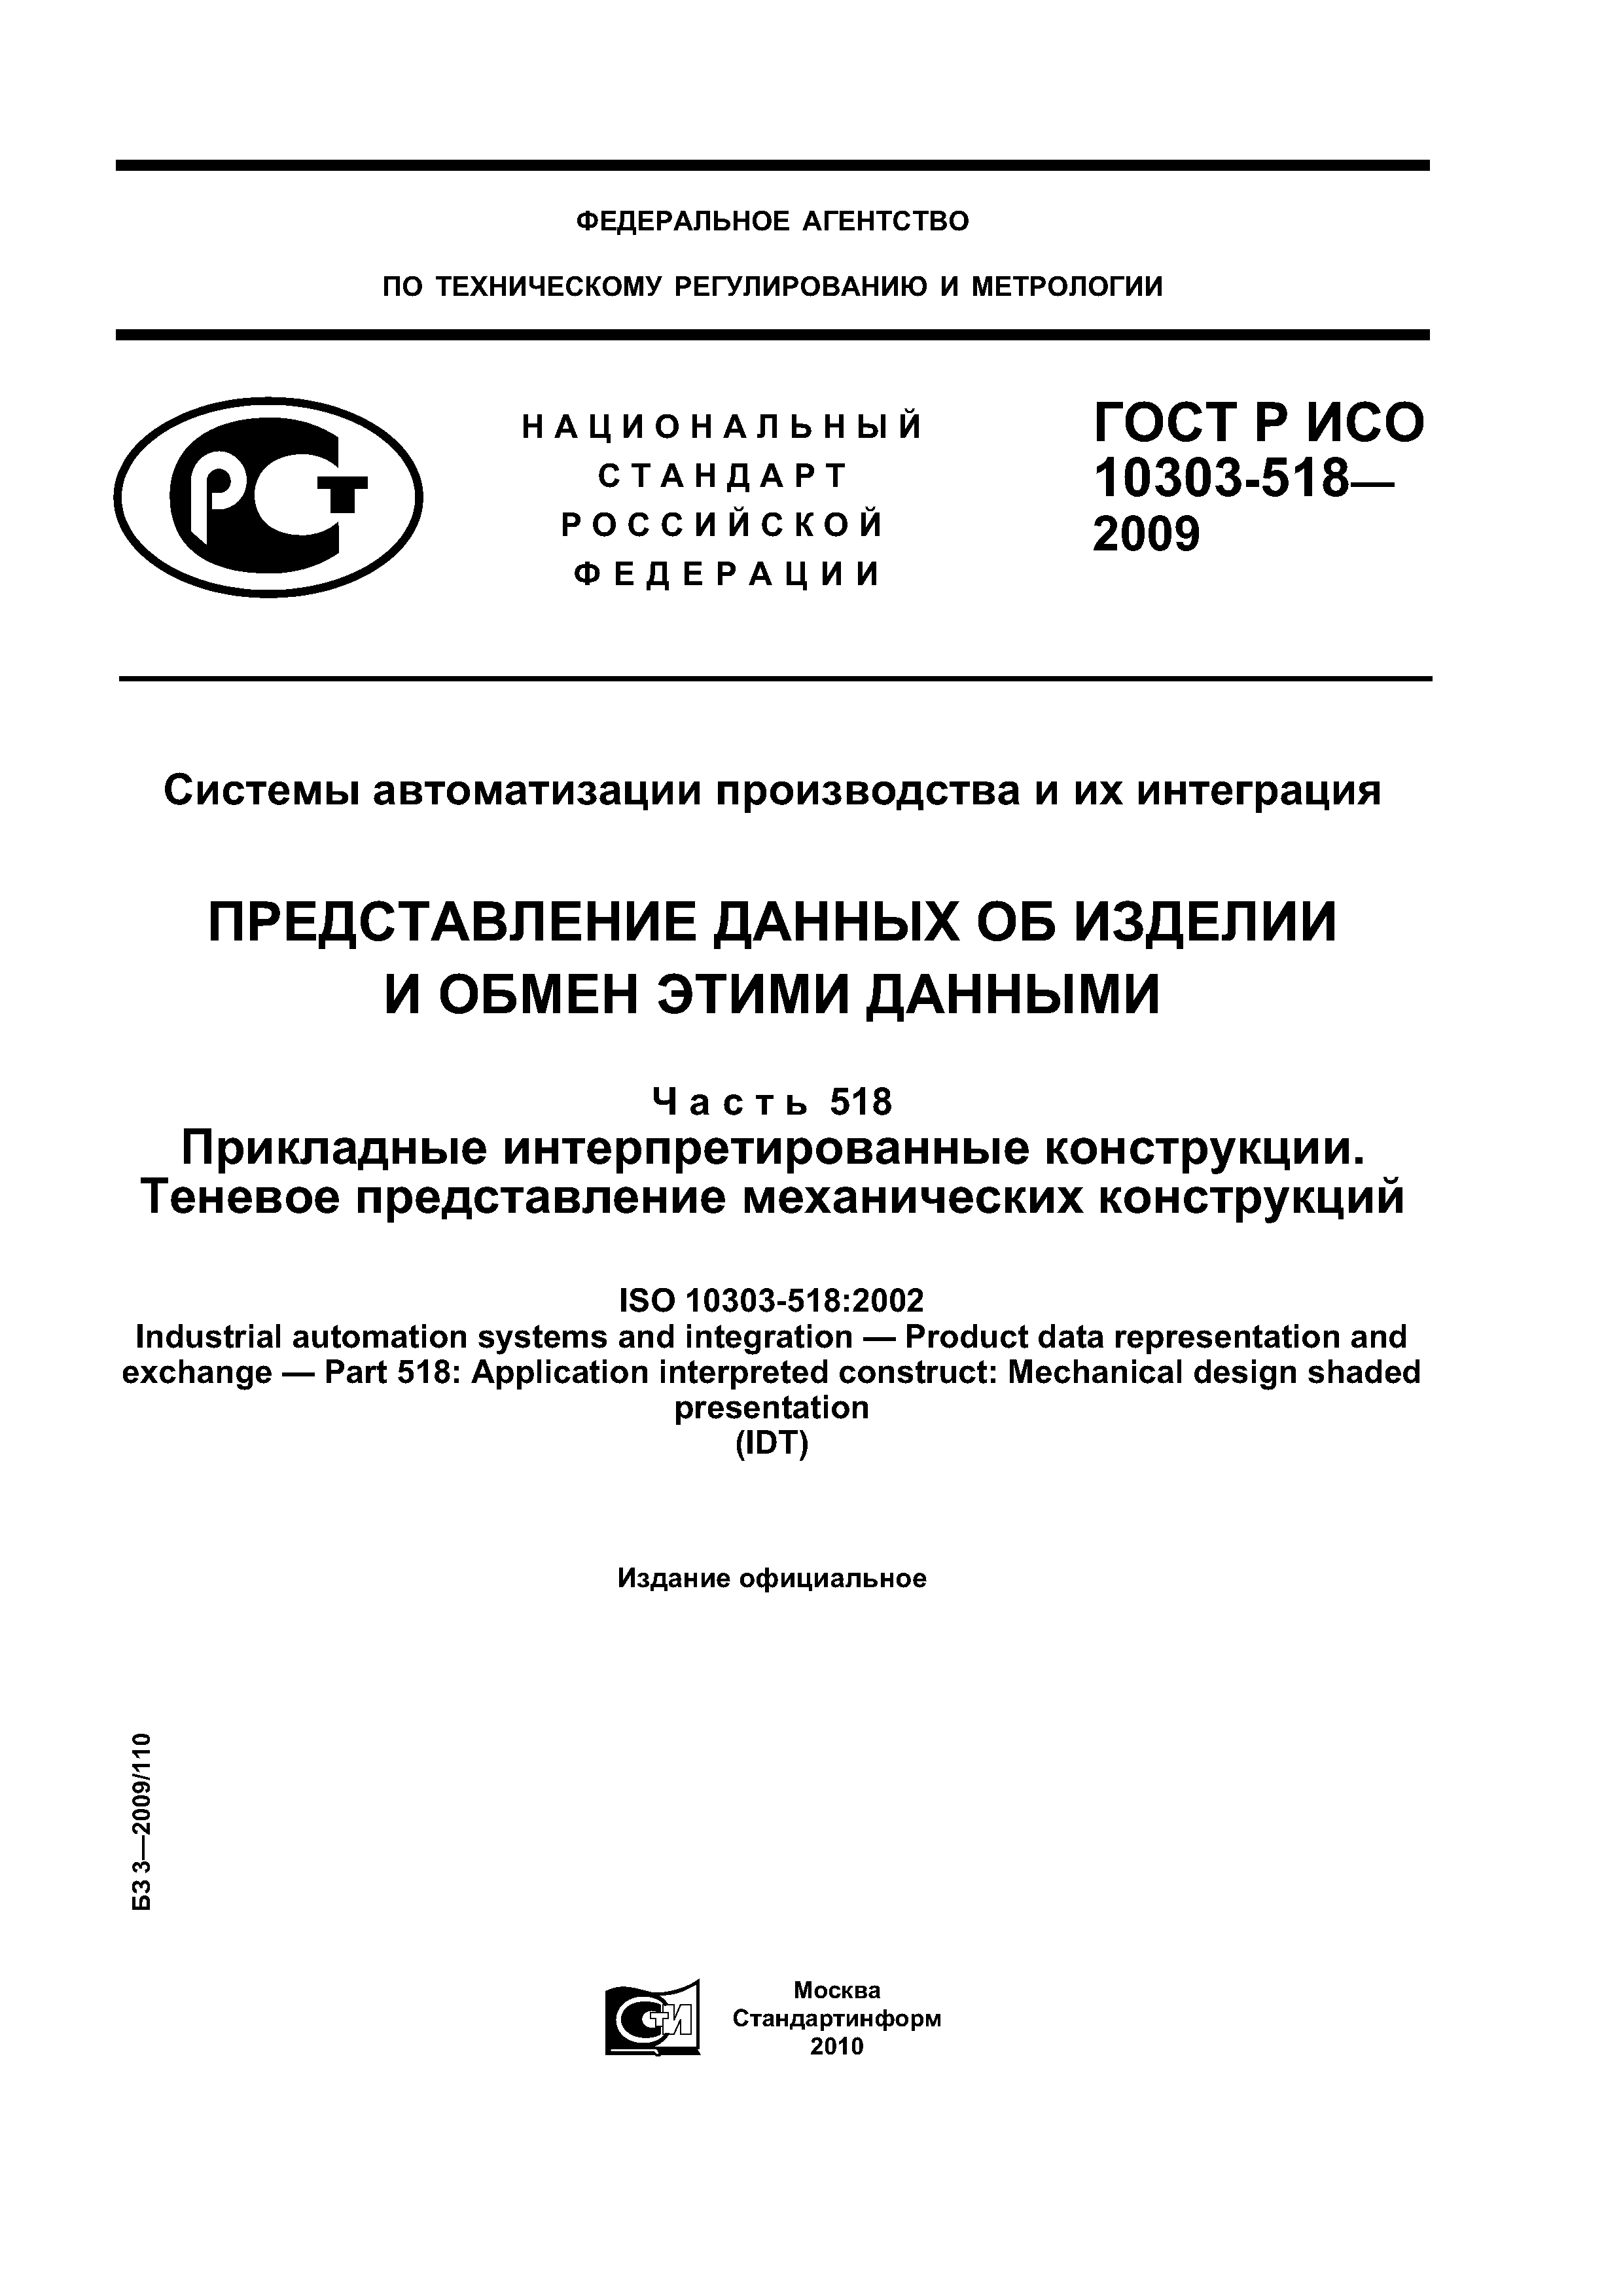 ГОСТ Р ИСО 10303-518-2009